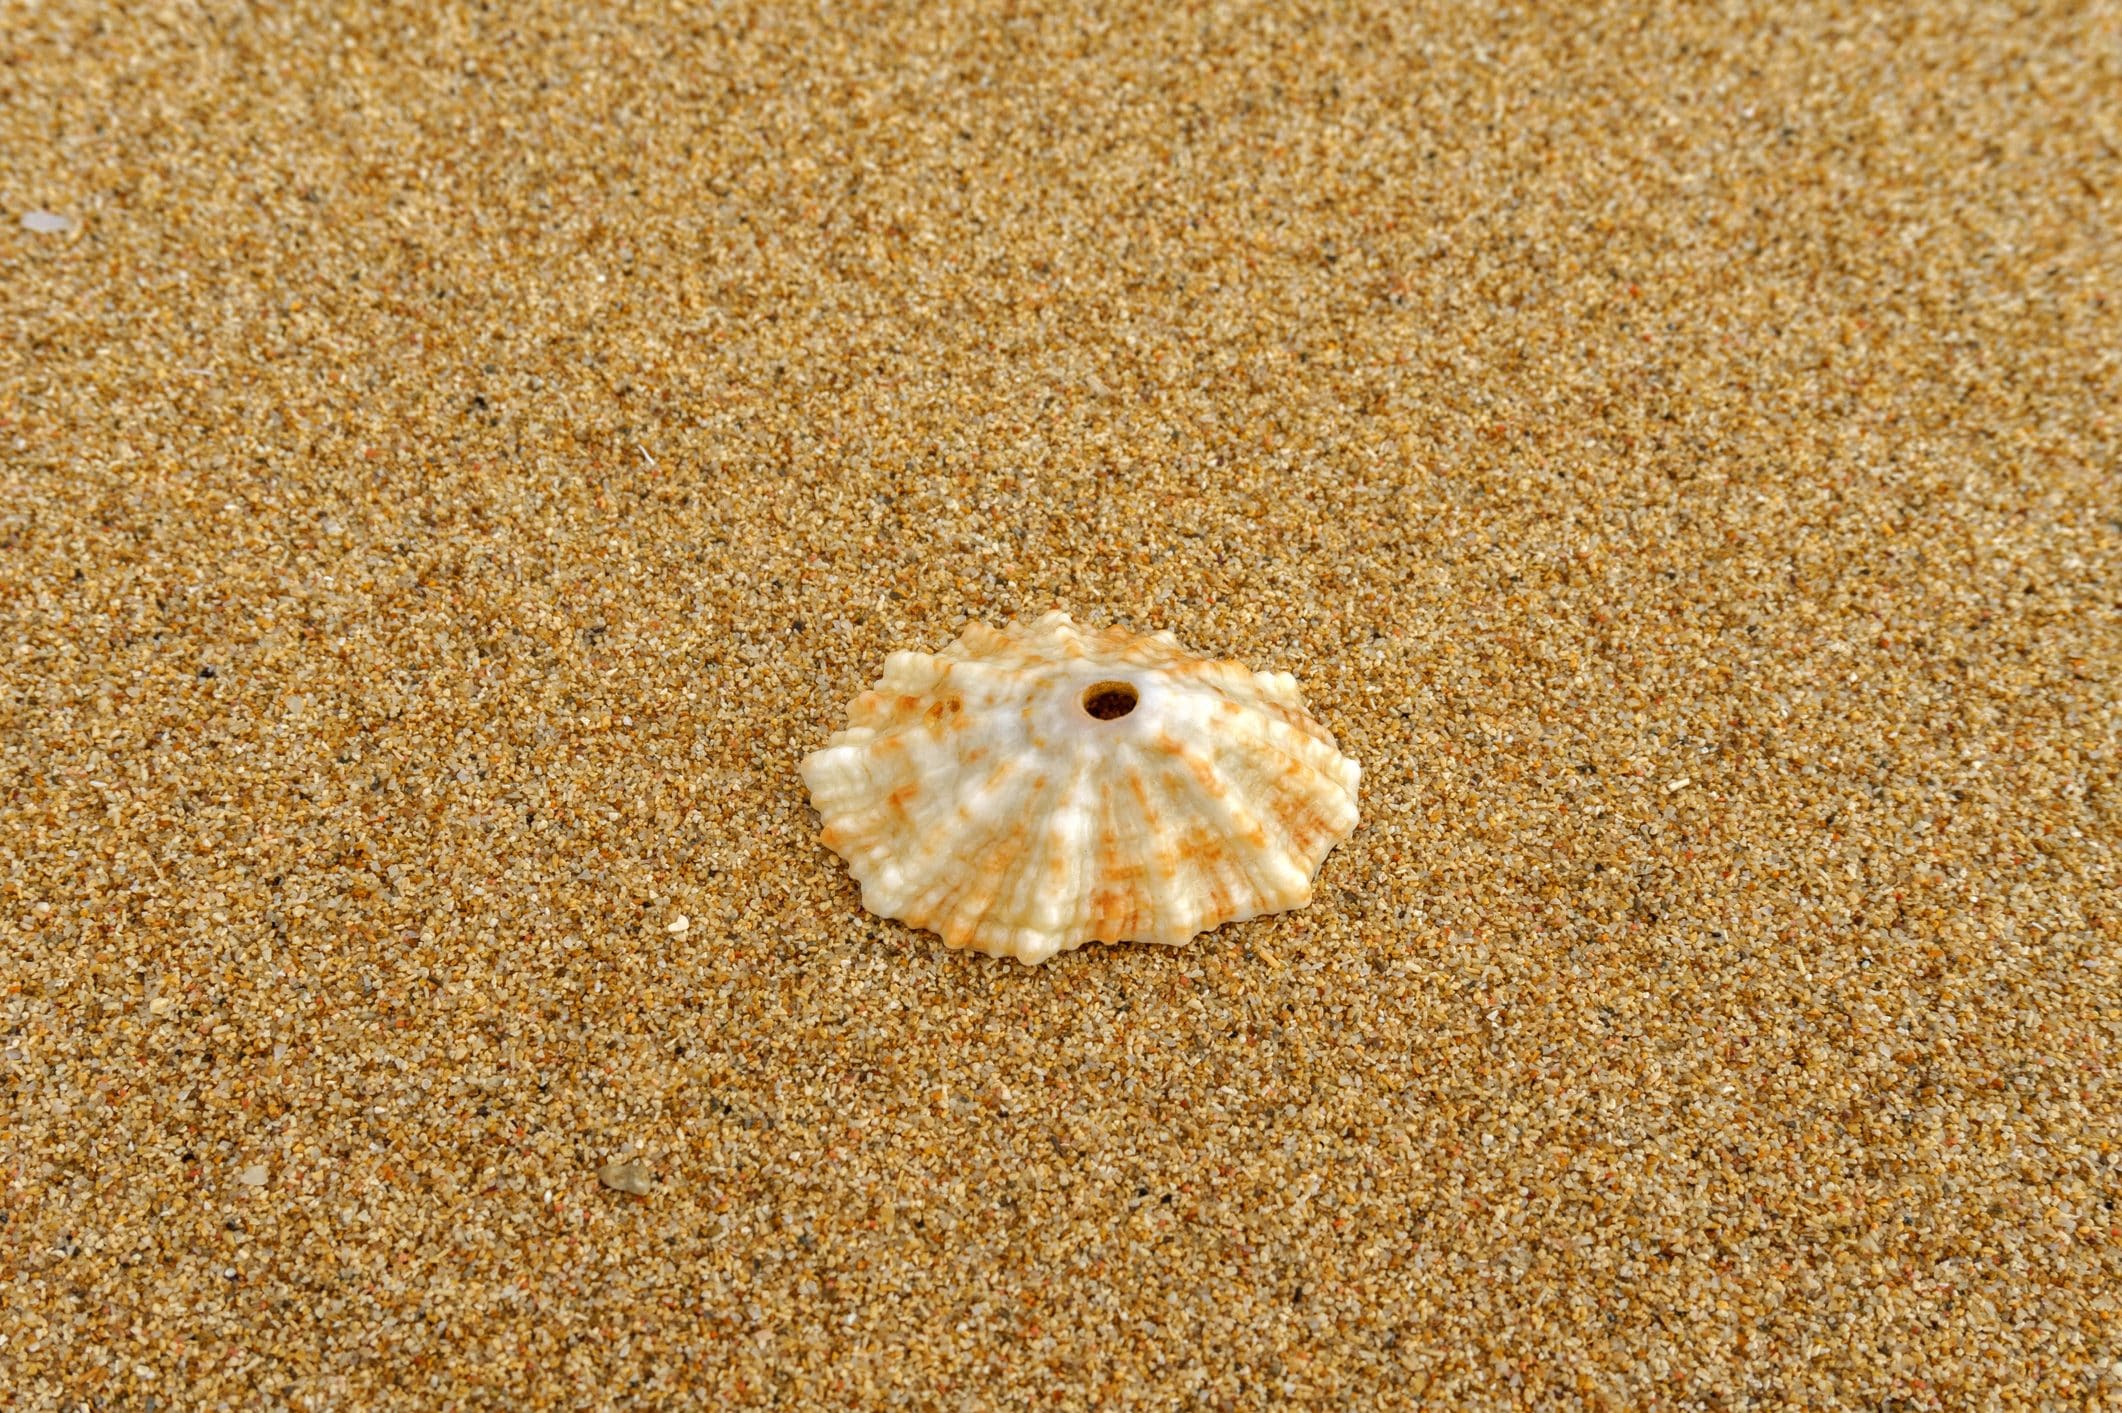 Scopri di più sull'articolo Perché le conchiglie che trovi in spiaggia spesso hanno un piccolo buco?